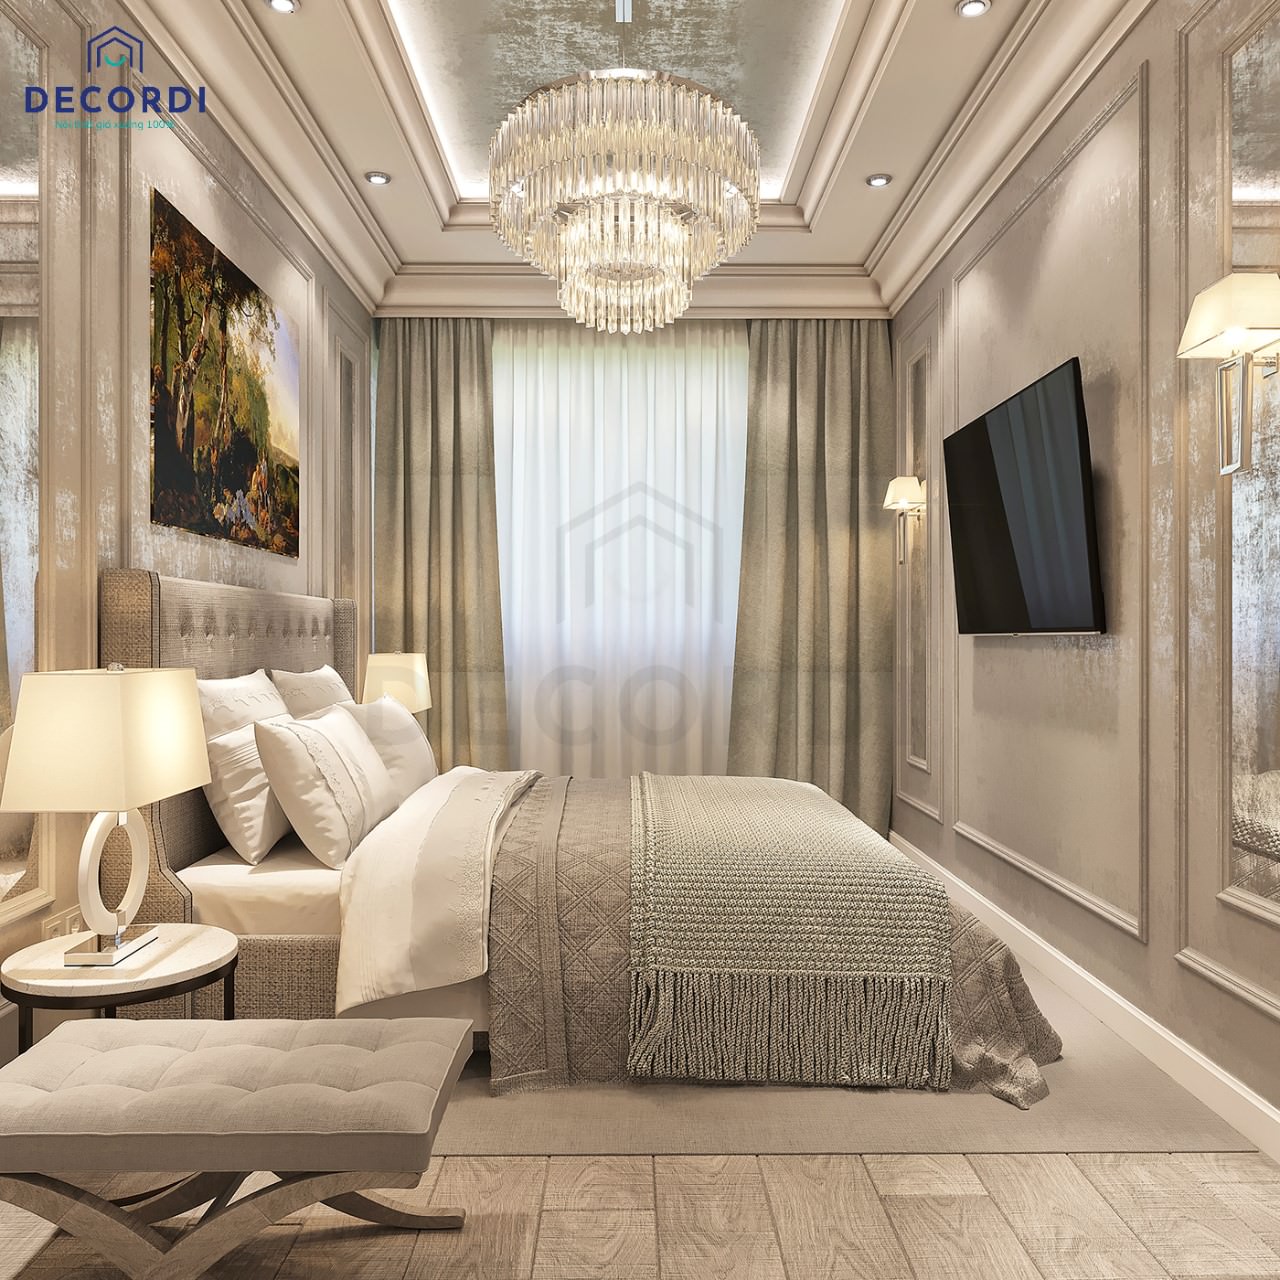 Không gian phòng ngủ mang một màu trắng ghi ấn tượng, tường phòng ngủ được thiết kế bào chỉ nổi bật bắt mắt. 